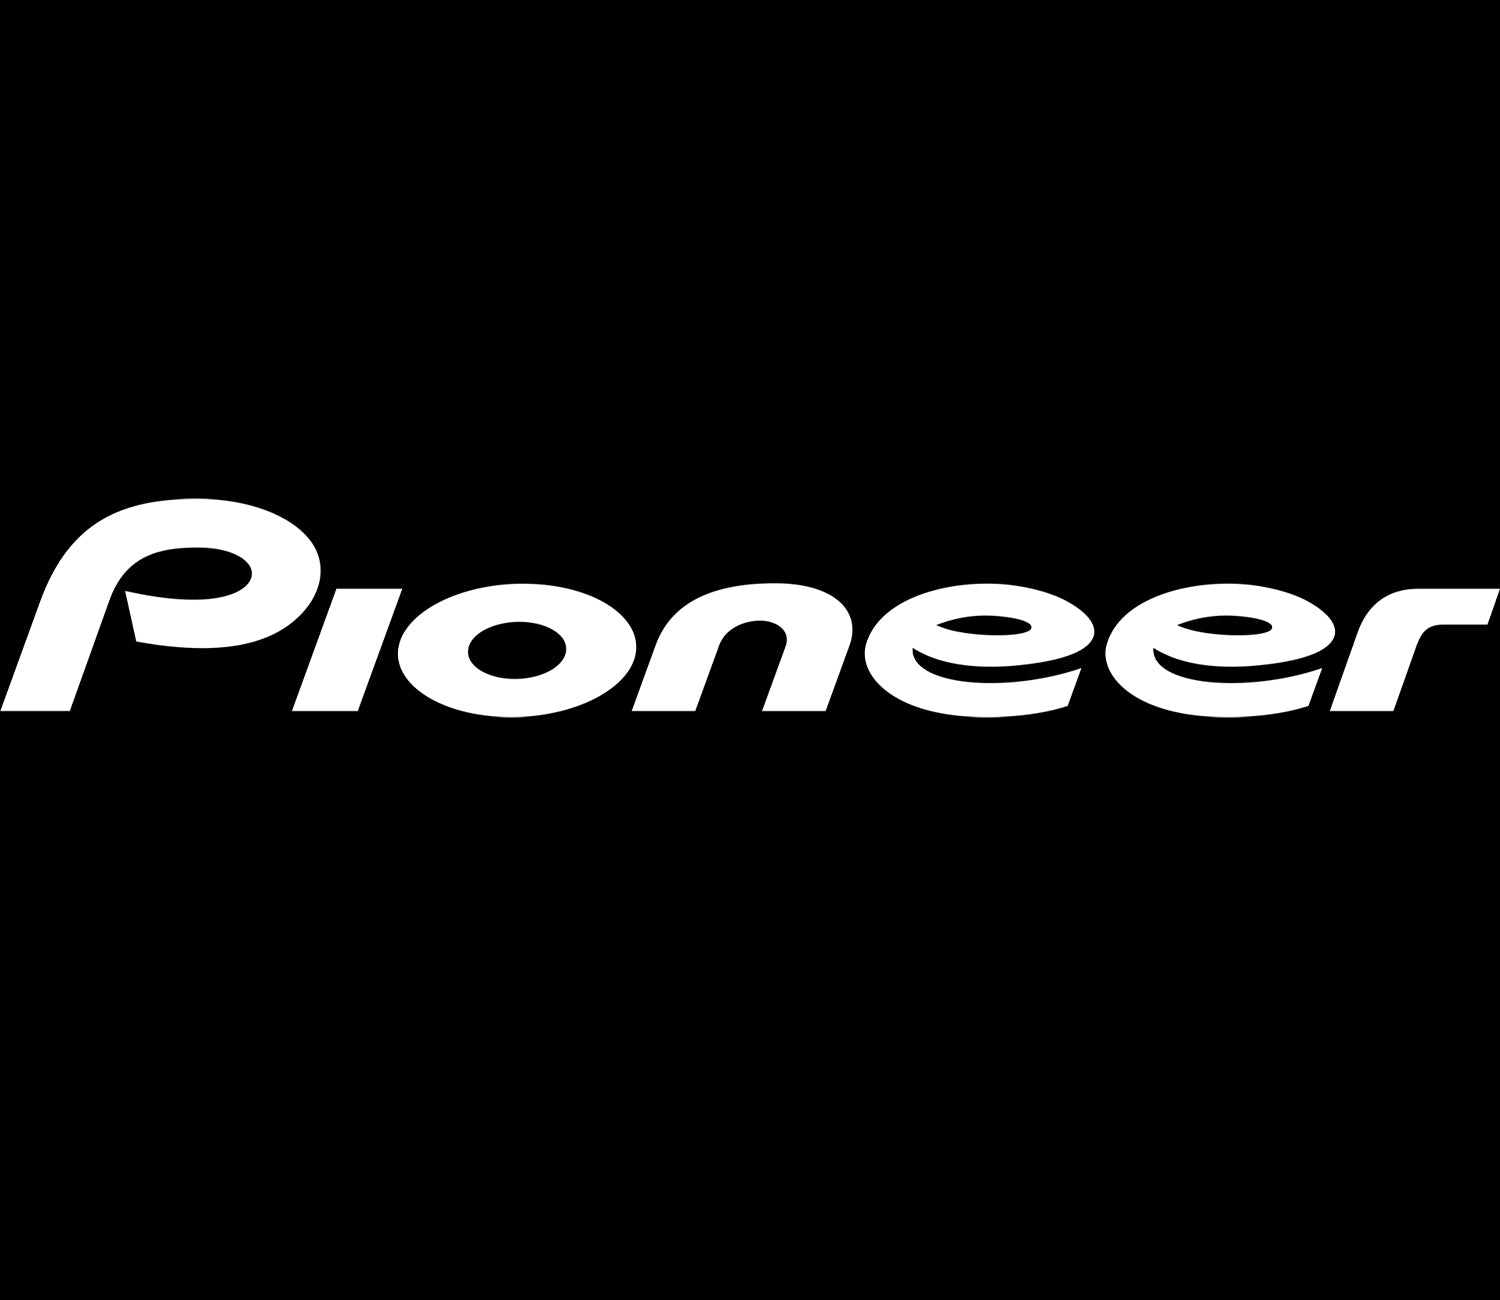 Pioneer Sticker 800x115 mm White PIONEER STICKER 800x115 White